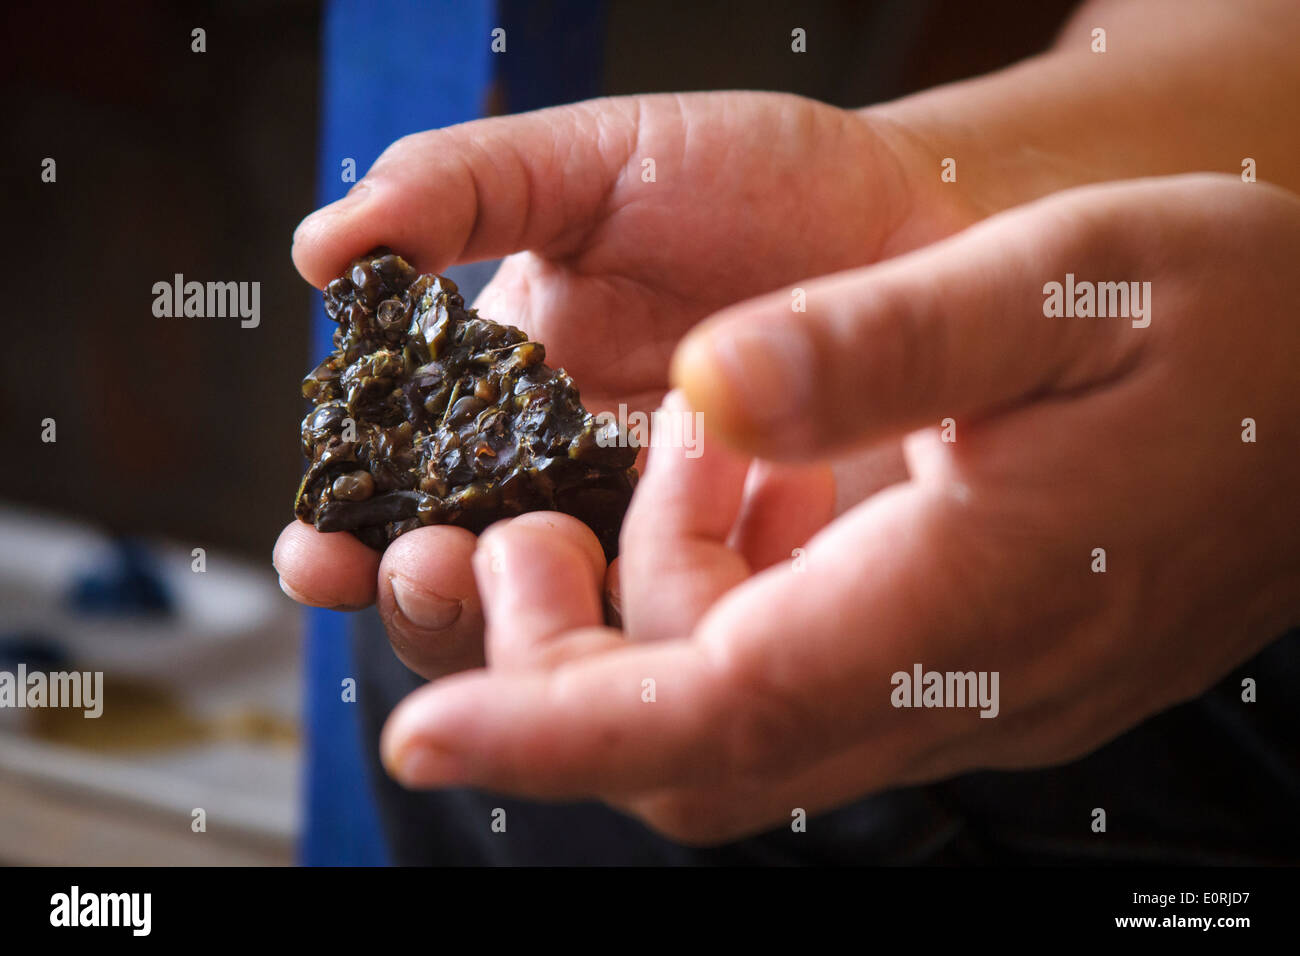 Las manos del artesano mostrando mopamopa resina de árbol. Pasto, Colombia. Foto de stock